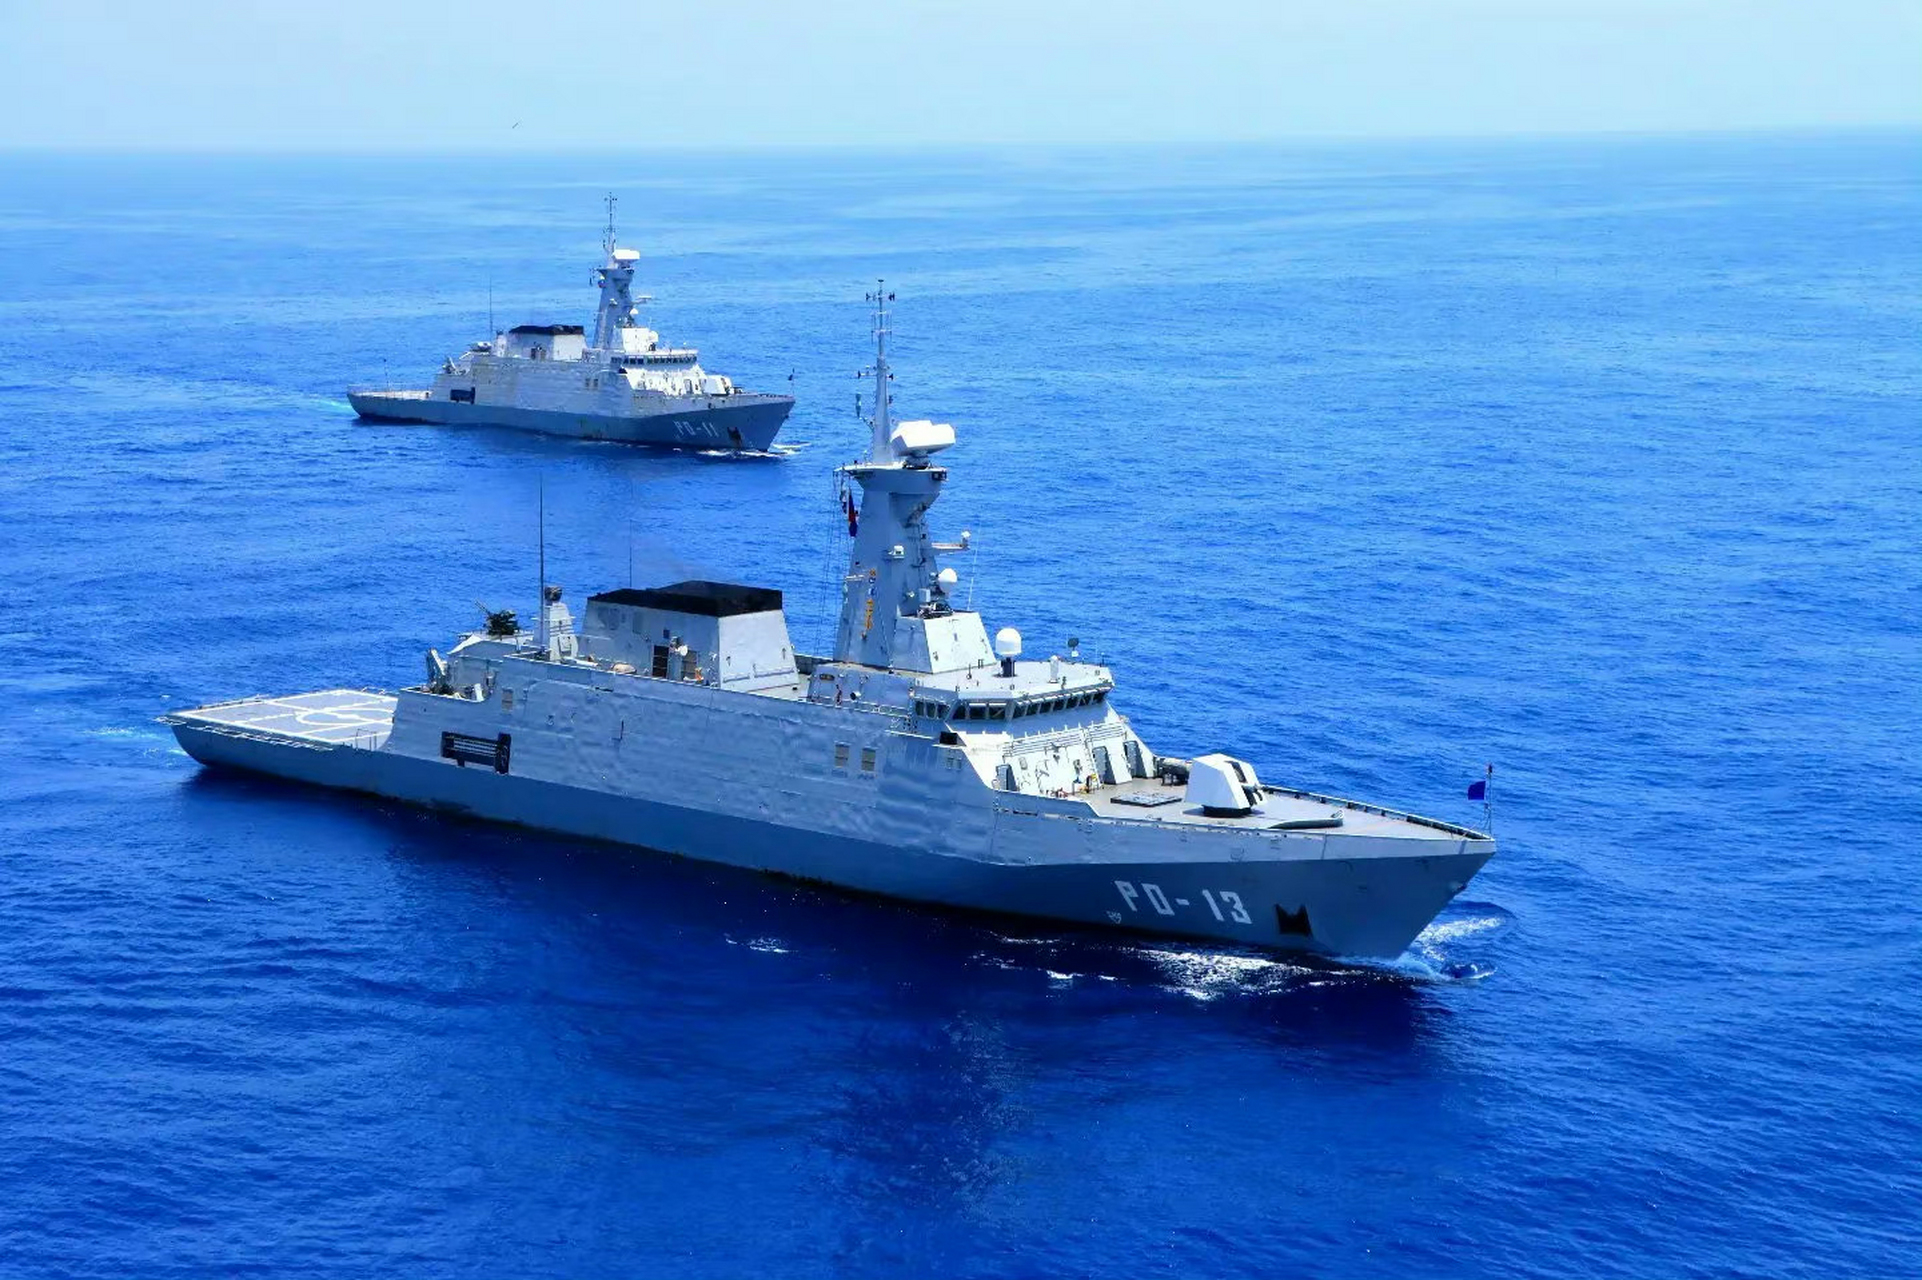 对海军装备没研究,话说图片中的军舰是哪个国家的,什么型号?